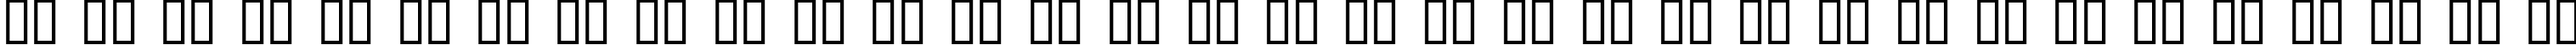 Пример написания русского алфавита шрифтом APPLE